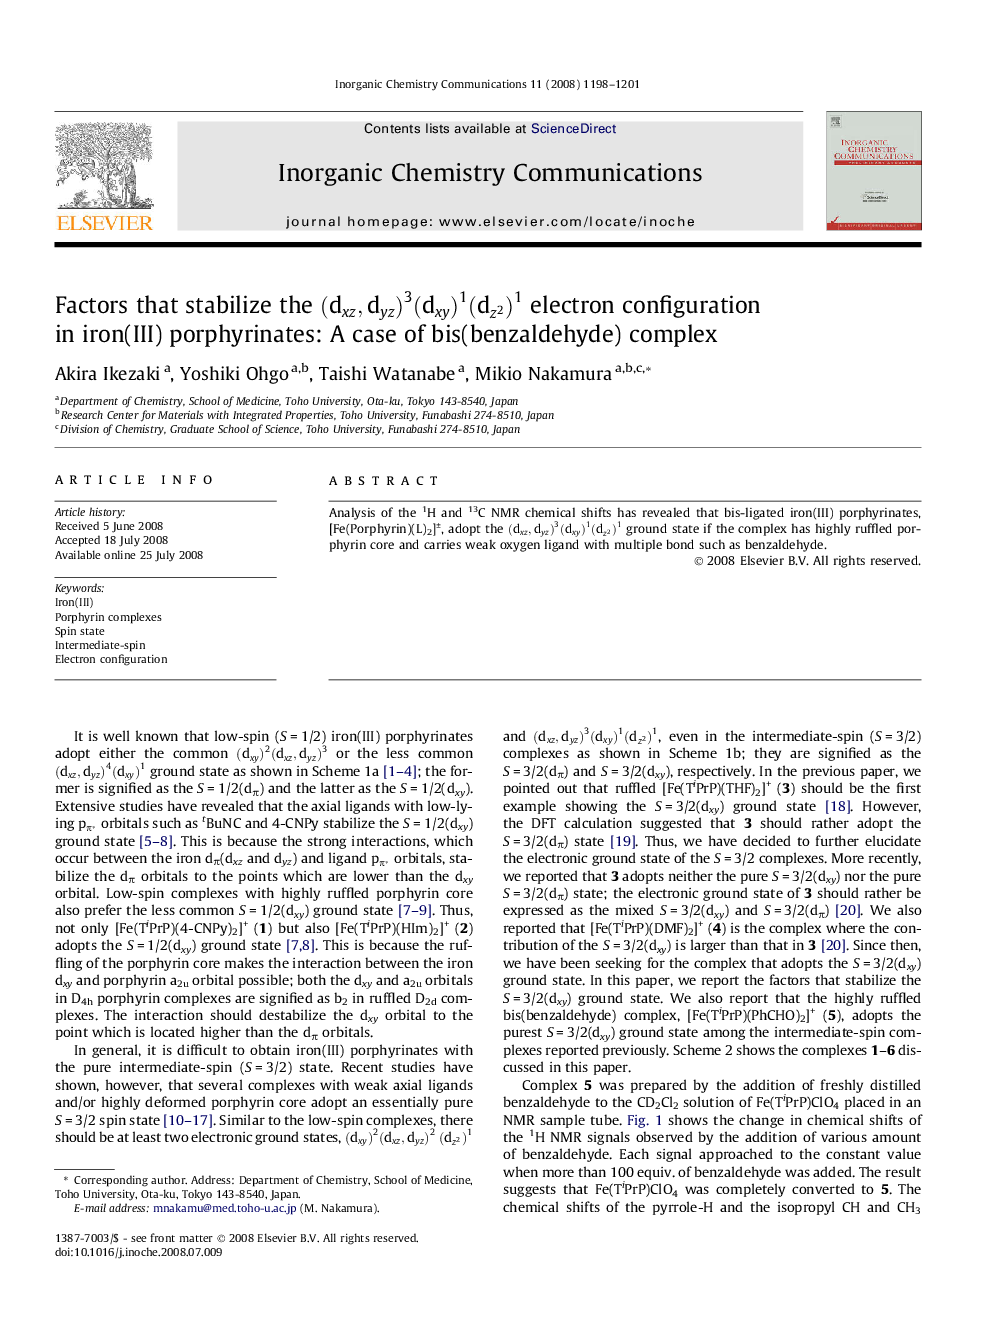 Factors that stabilize the (dxz,dyz)3(dxy)1(dz2)1(dxz,dyz)3(dxy)1(dz2)1 electron configuration in iron(III) porphyrinates: A case of bis(benzaldehyde) complex